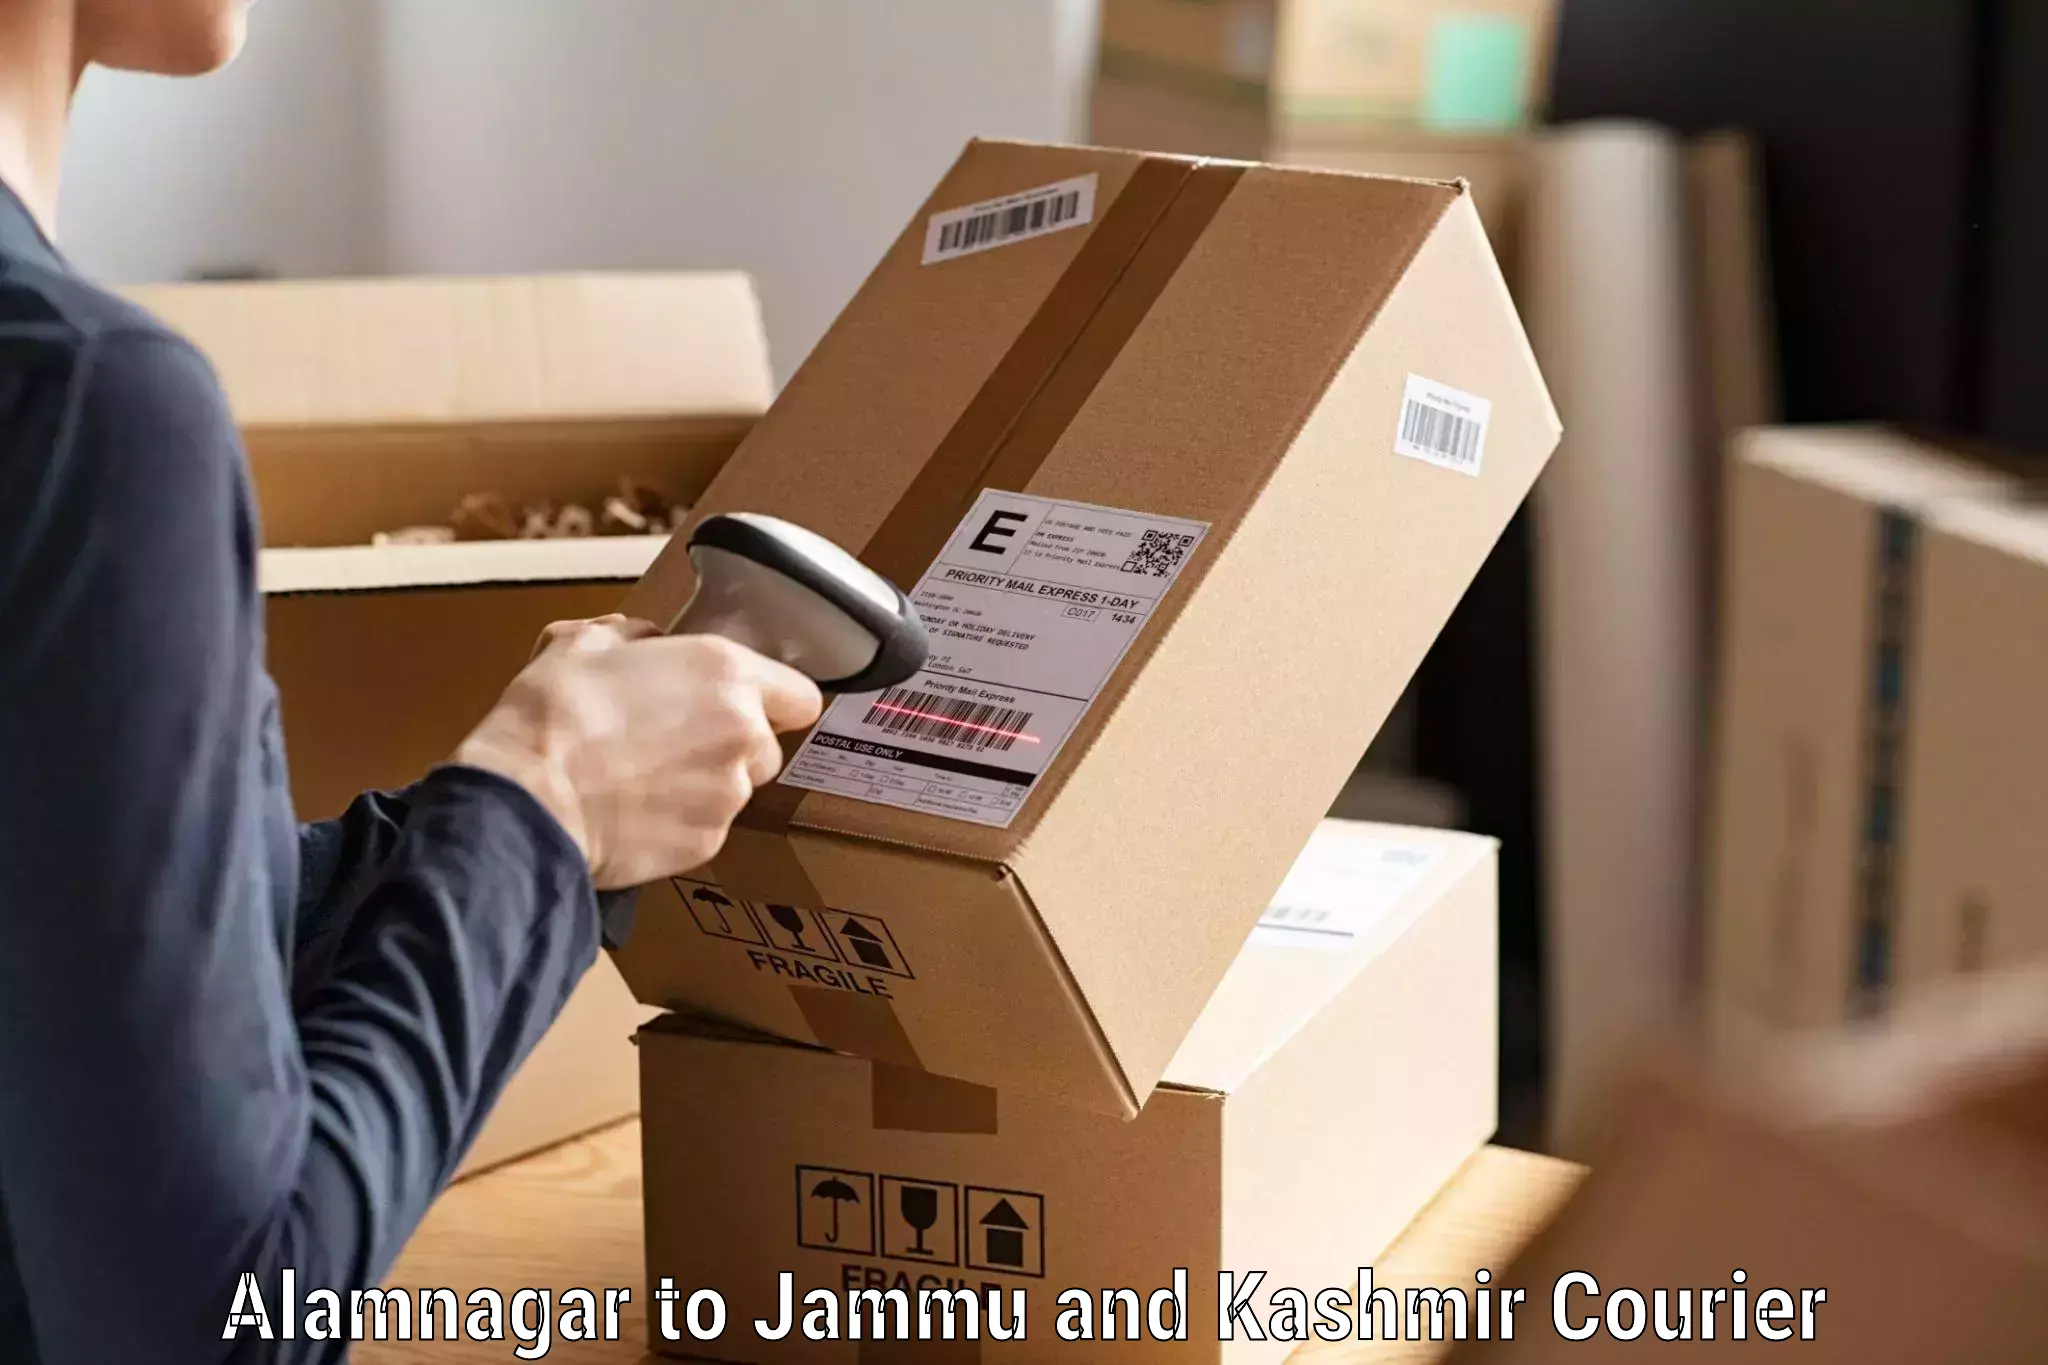 Secure freight services Alamnagar to Jammu and Kashmir